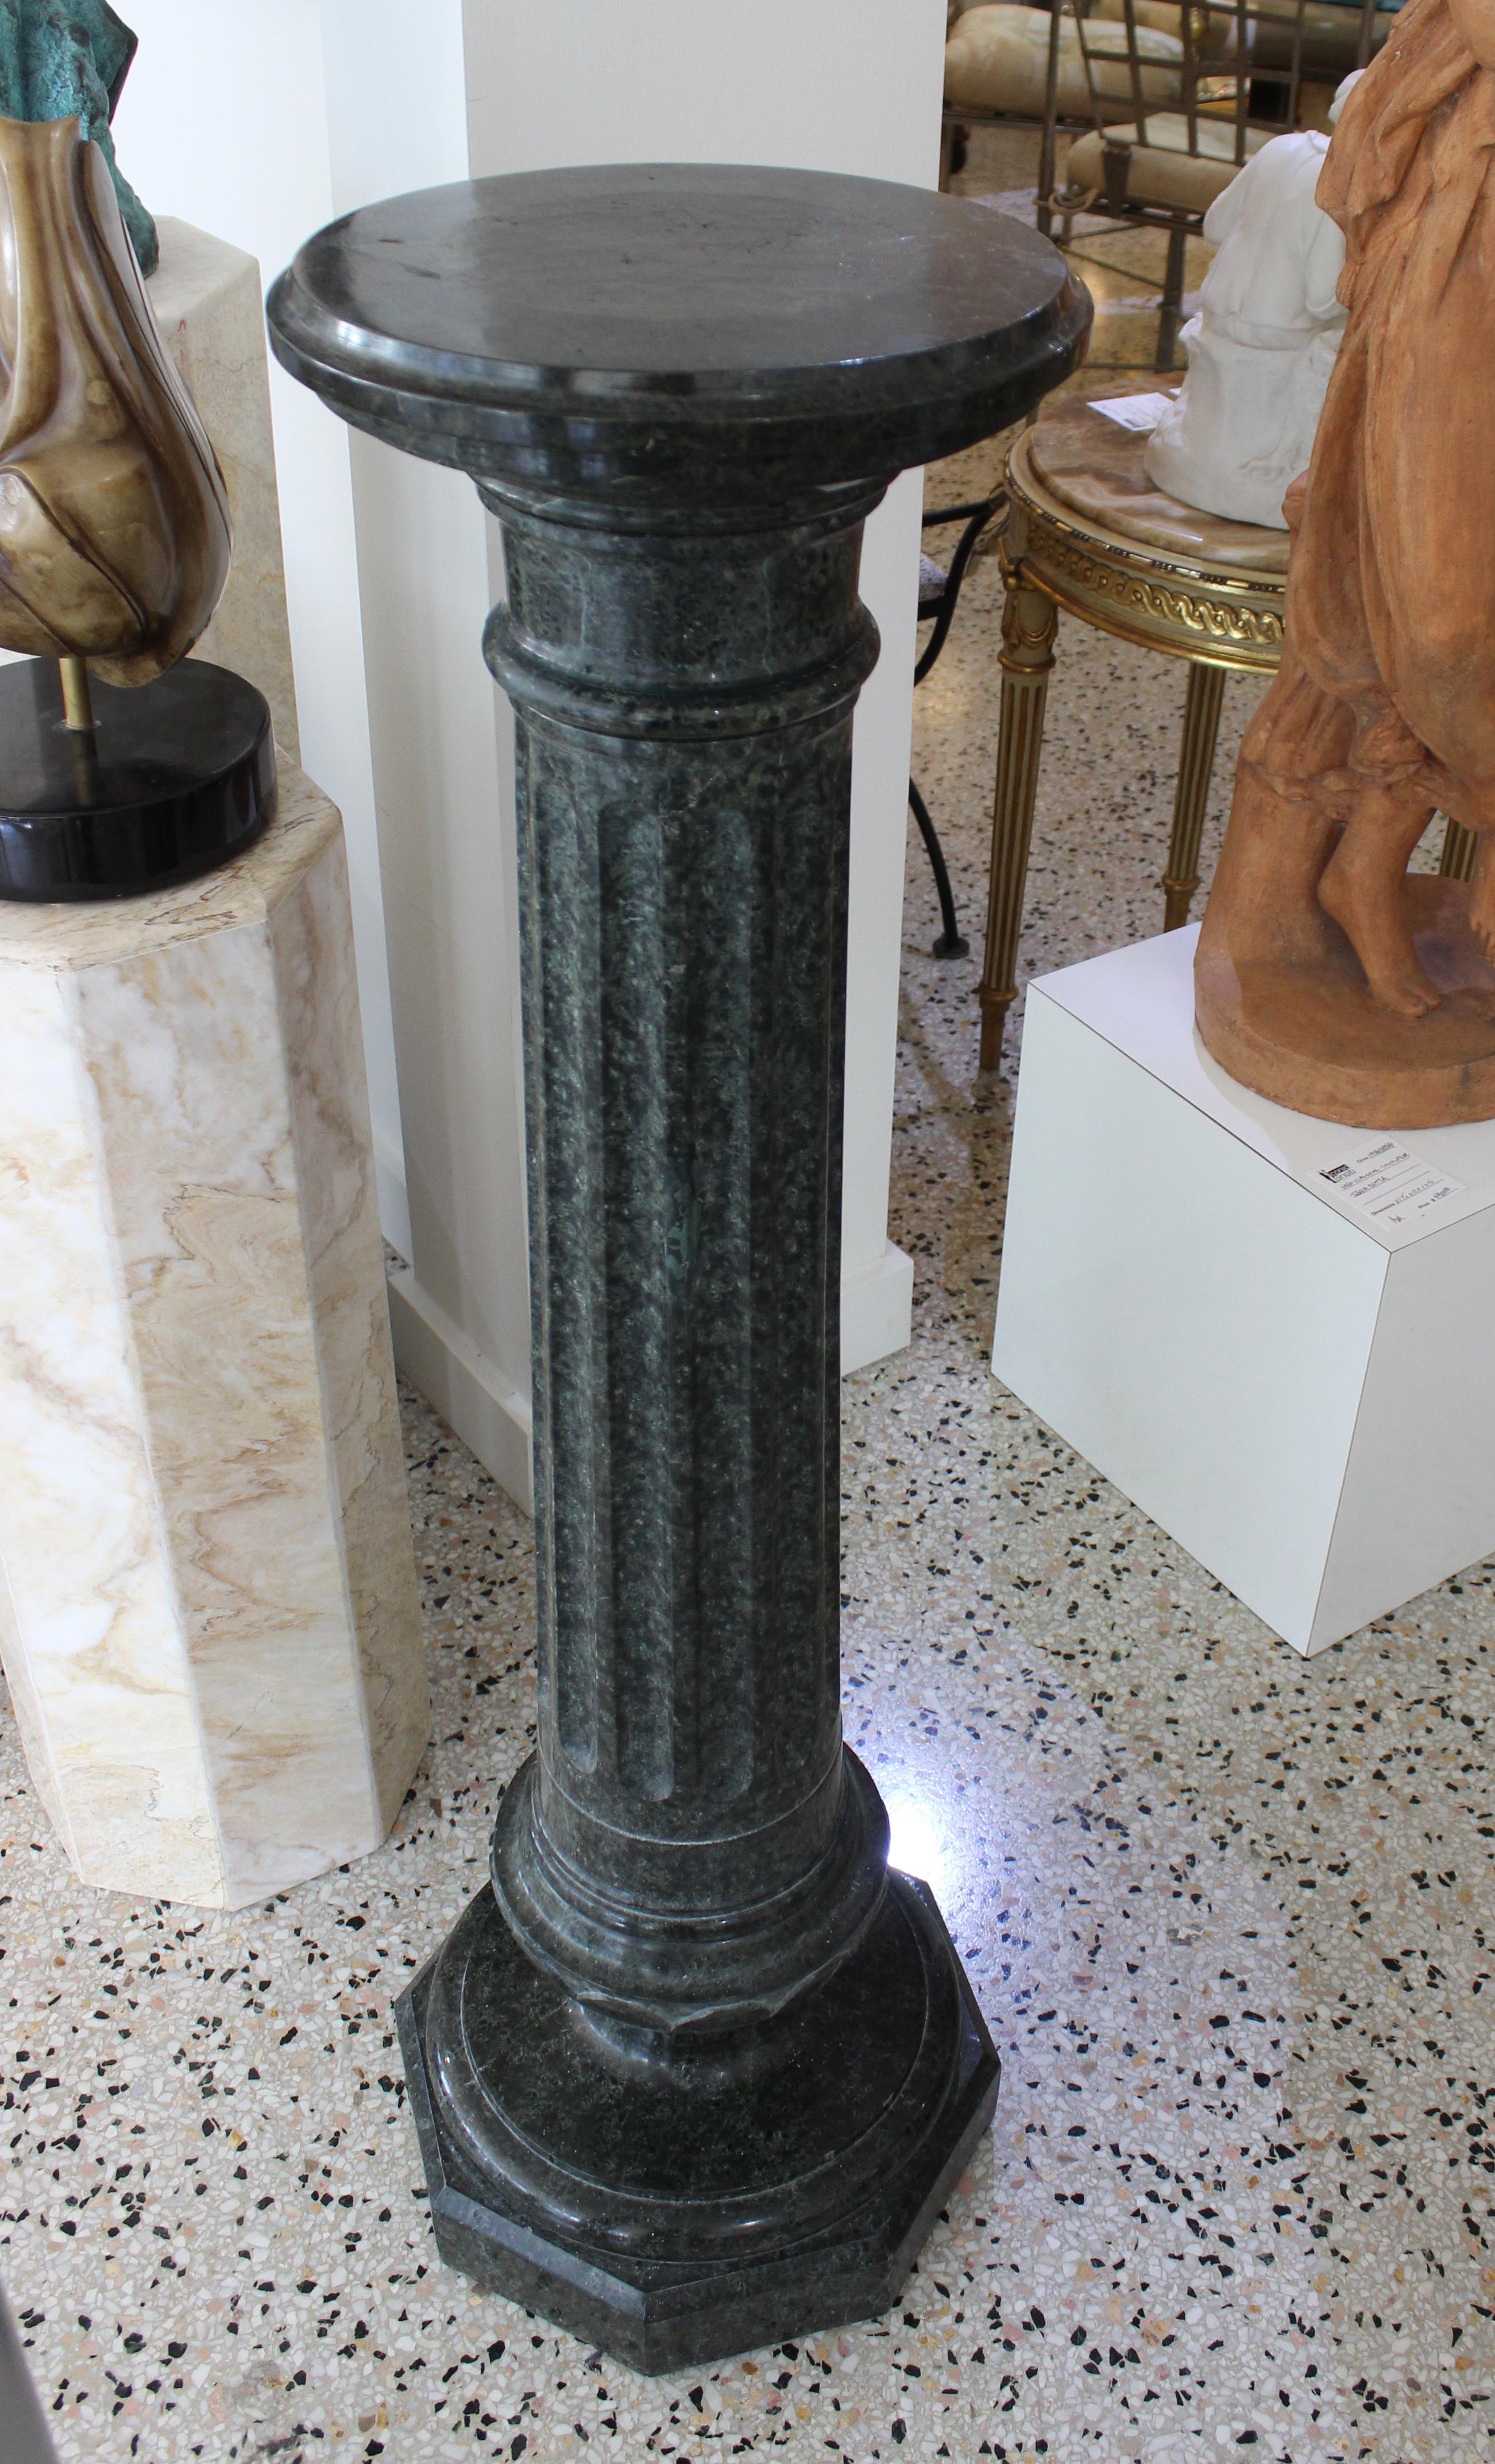 Questo elegante piedistallo in marmo italiano risale alla fine del XIX secolo ed è stato acquistato da una proprietà di Palm Beach.

Nota: il piedistallo è composto da cinque pezzi separati 

Nota: c'è una piccola scheggiatura e prove di precedenti